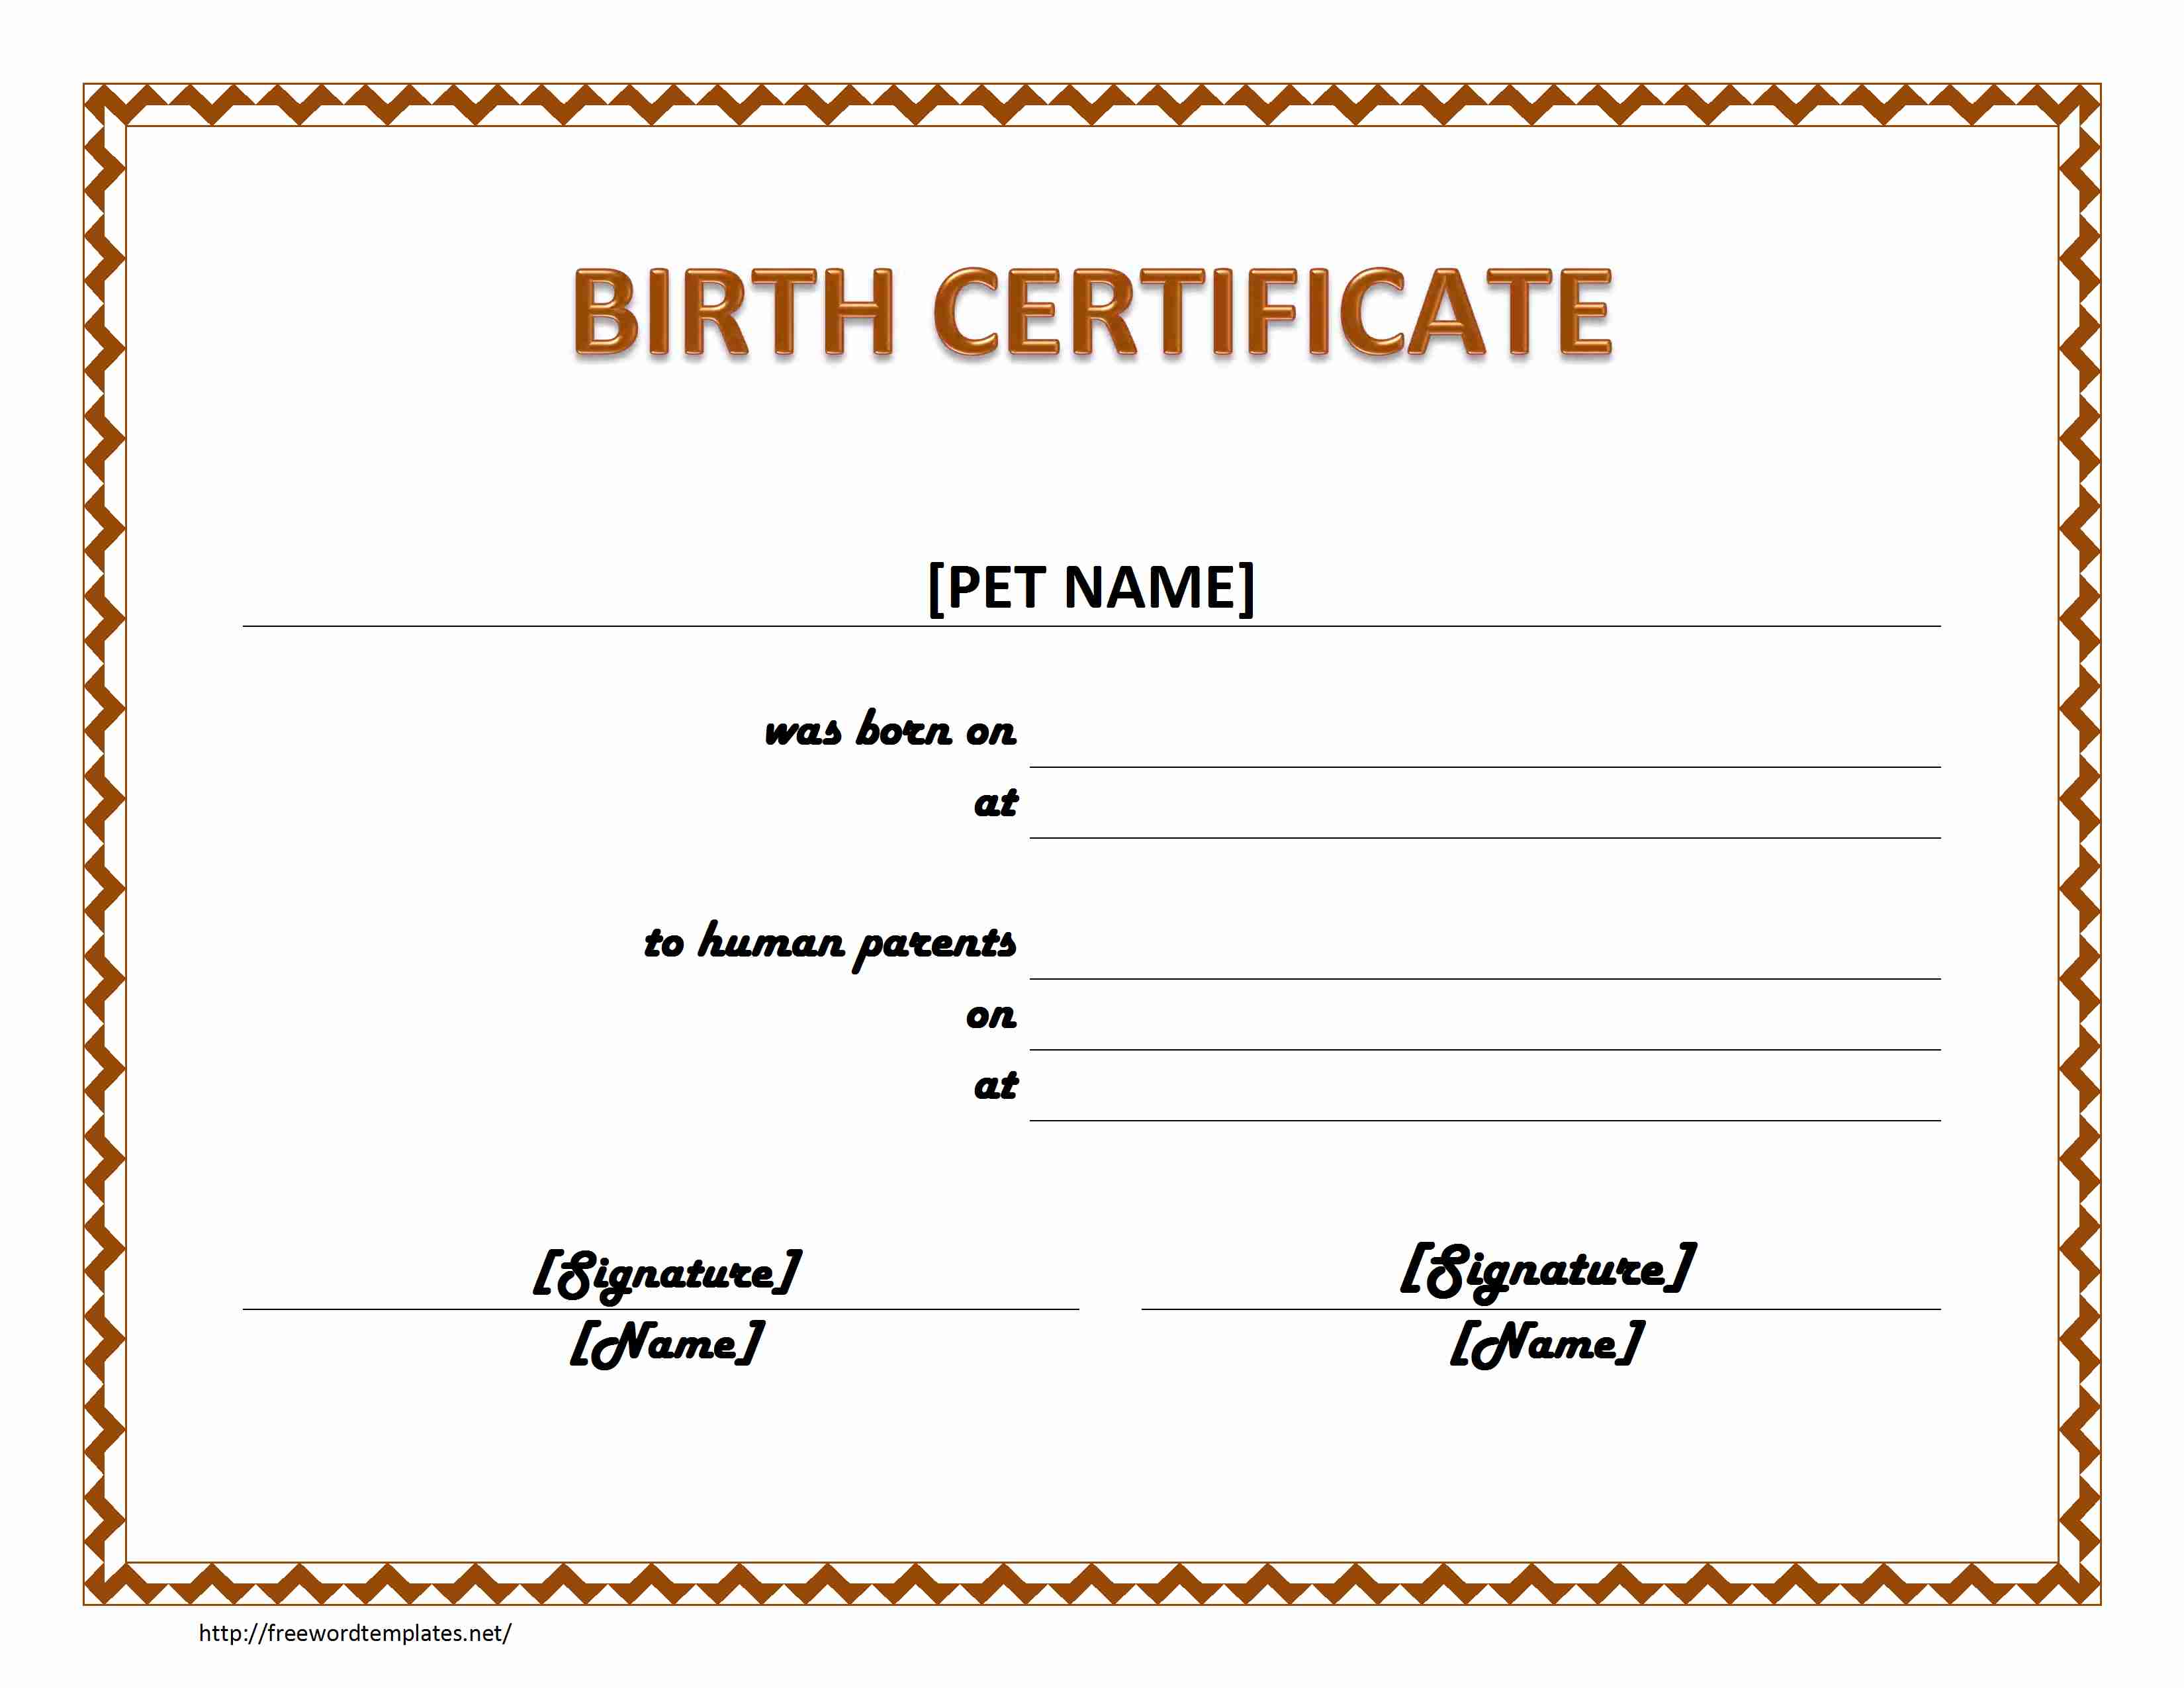 pet-birth-certificate